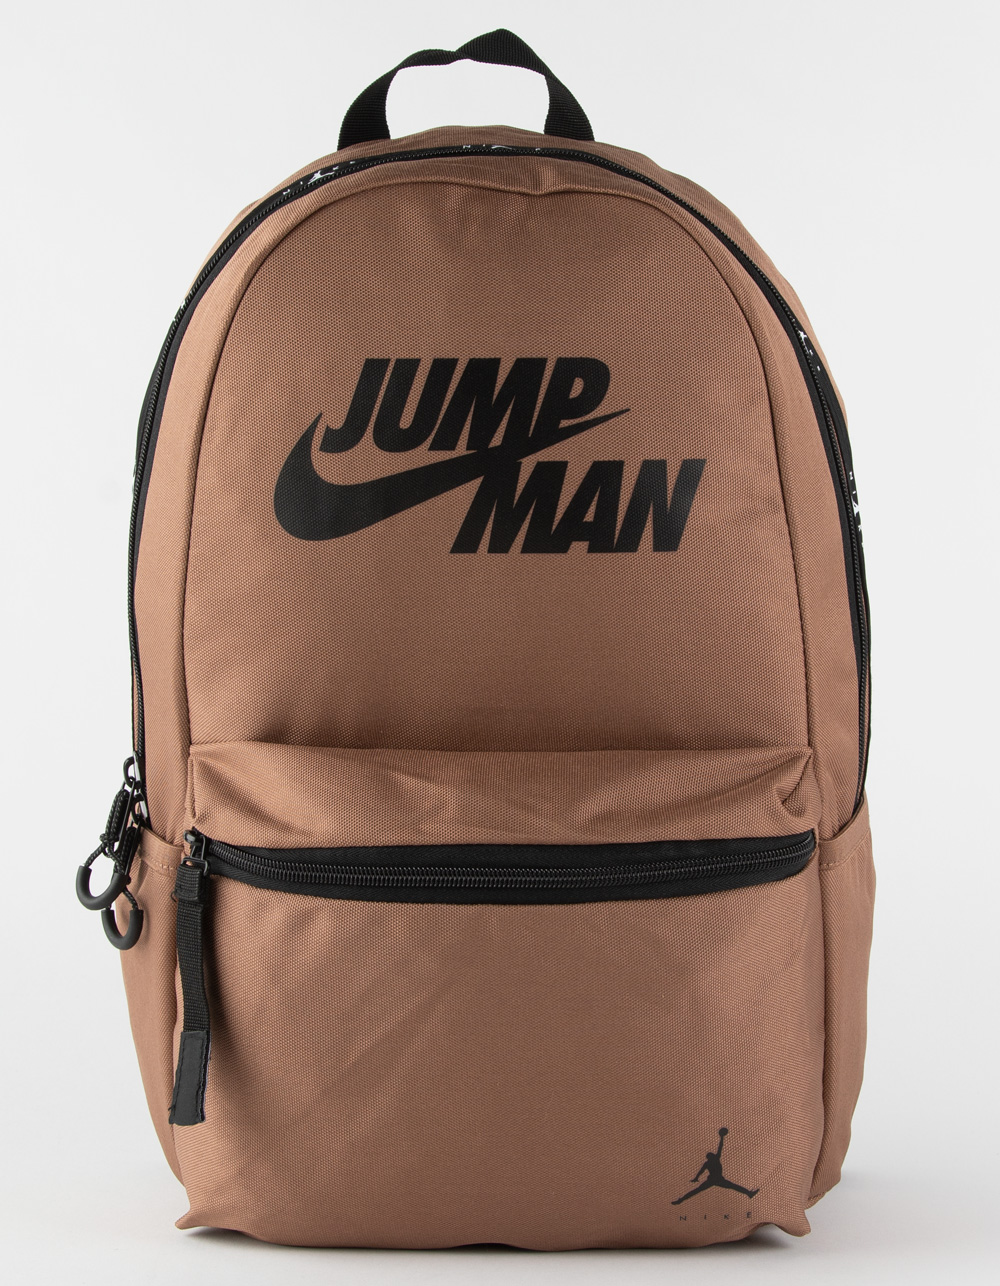 JORDAN Jumpman By Nike Backpack - BROWN | Tillys